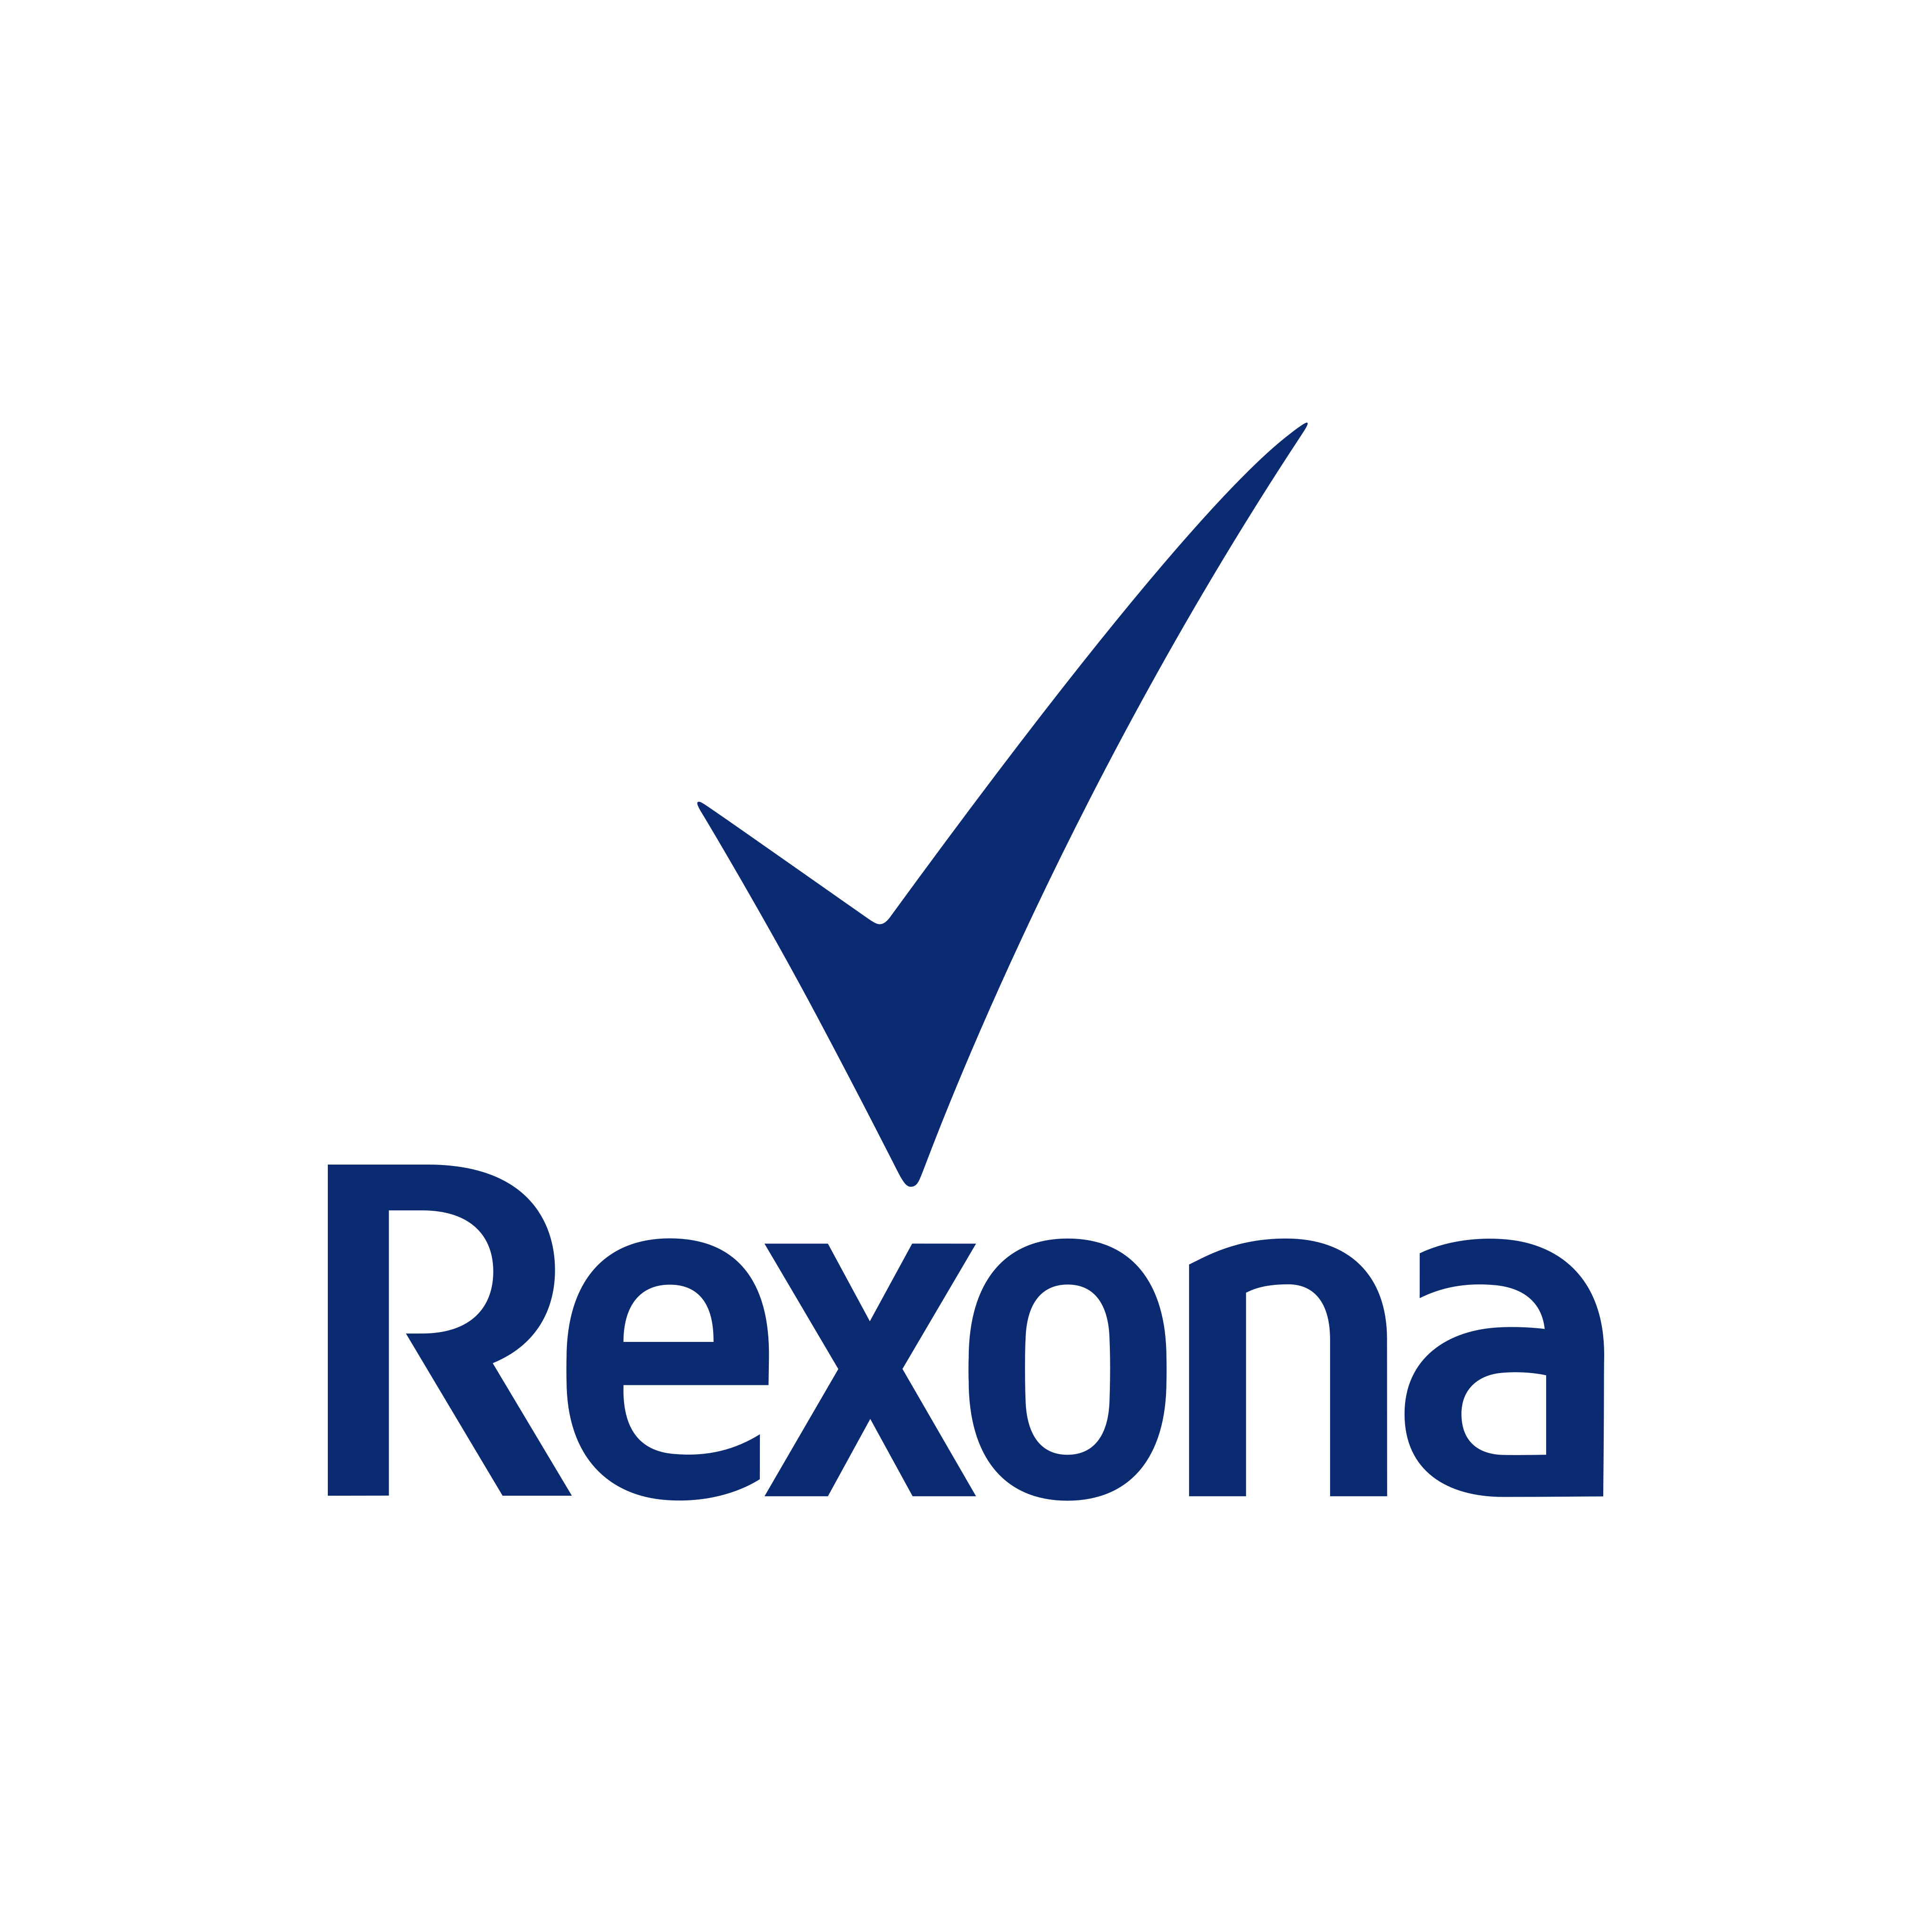 rexona logo 0 - Rexona Logo